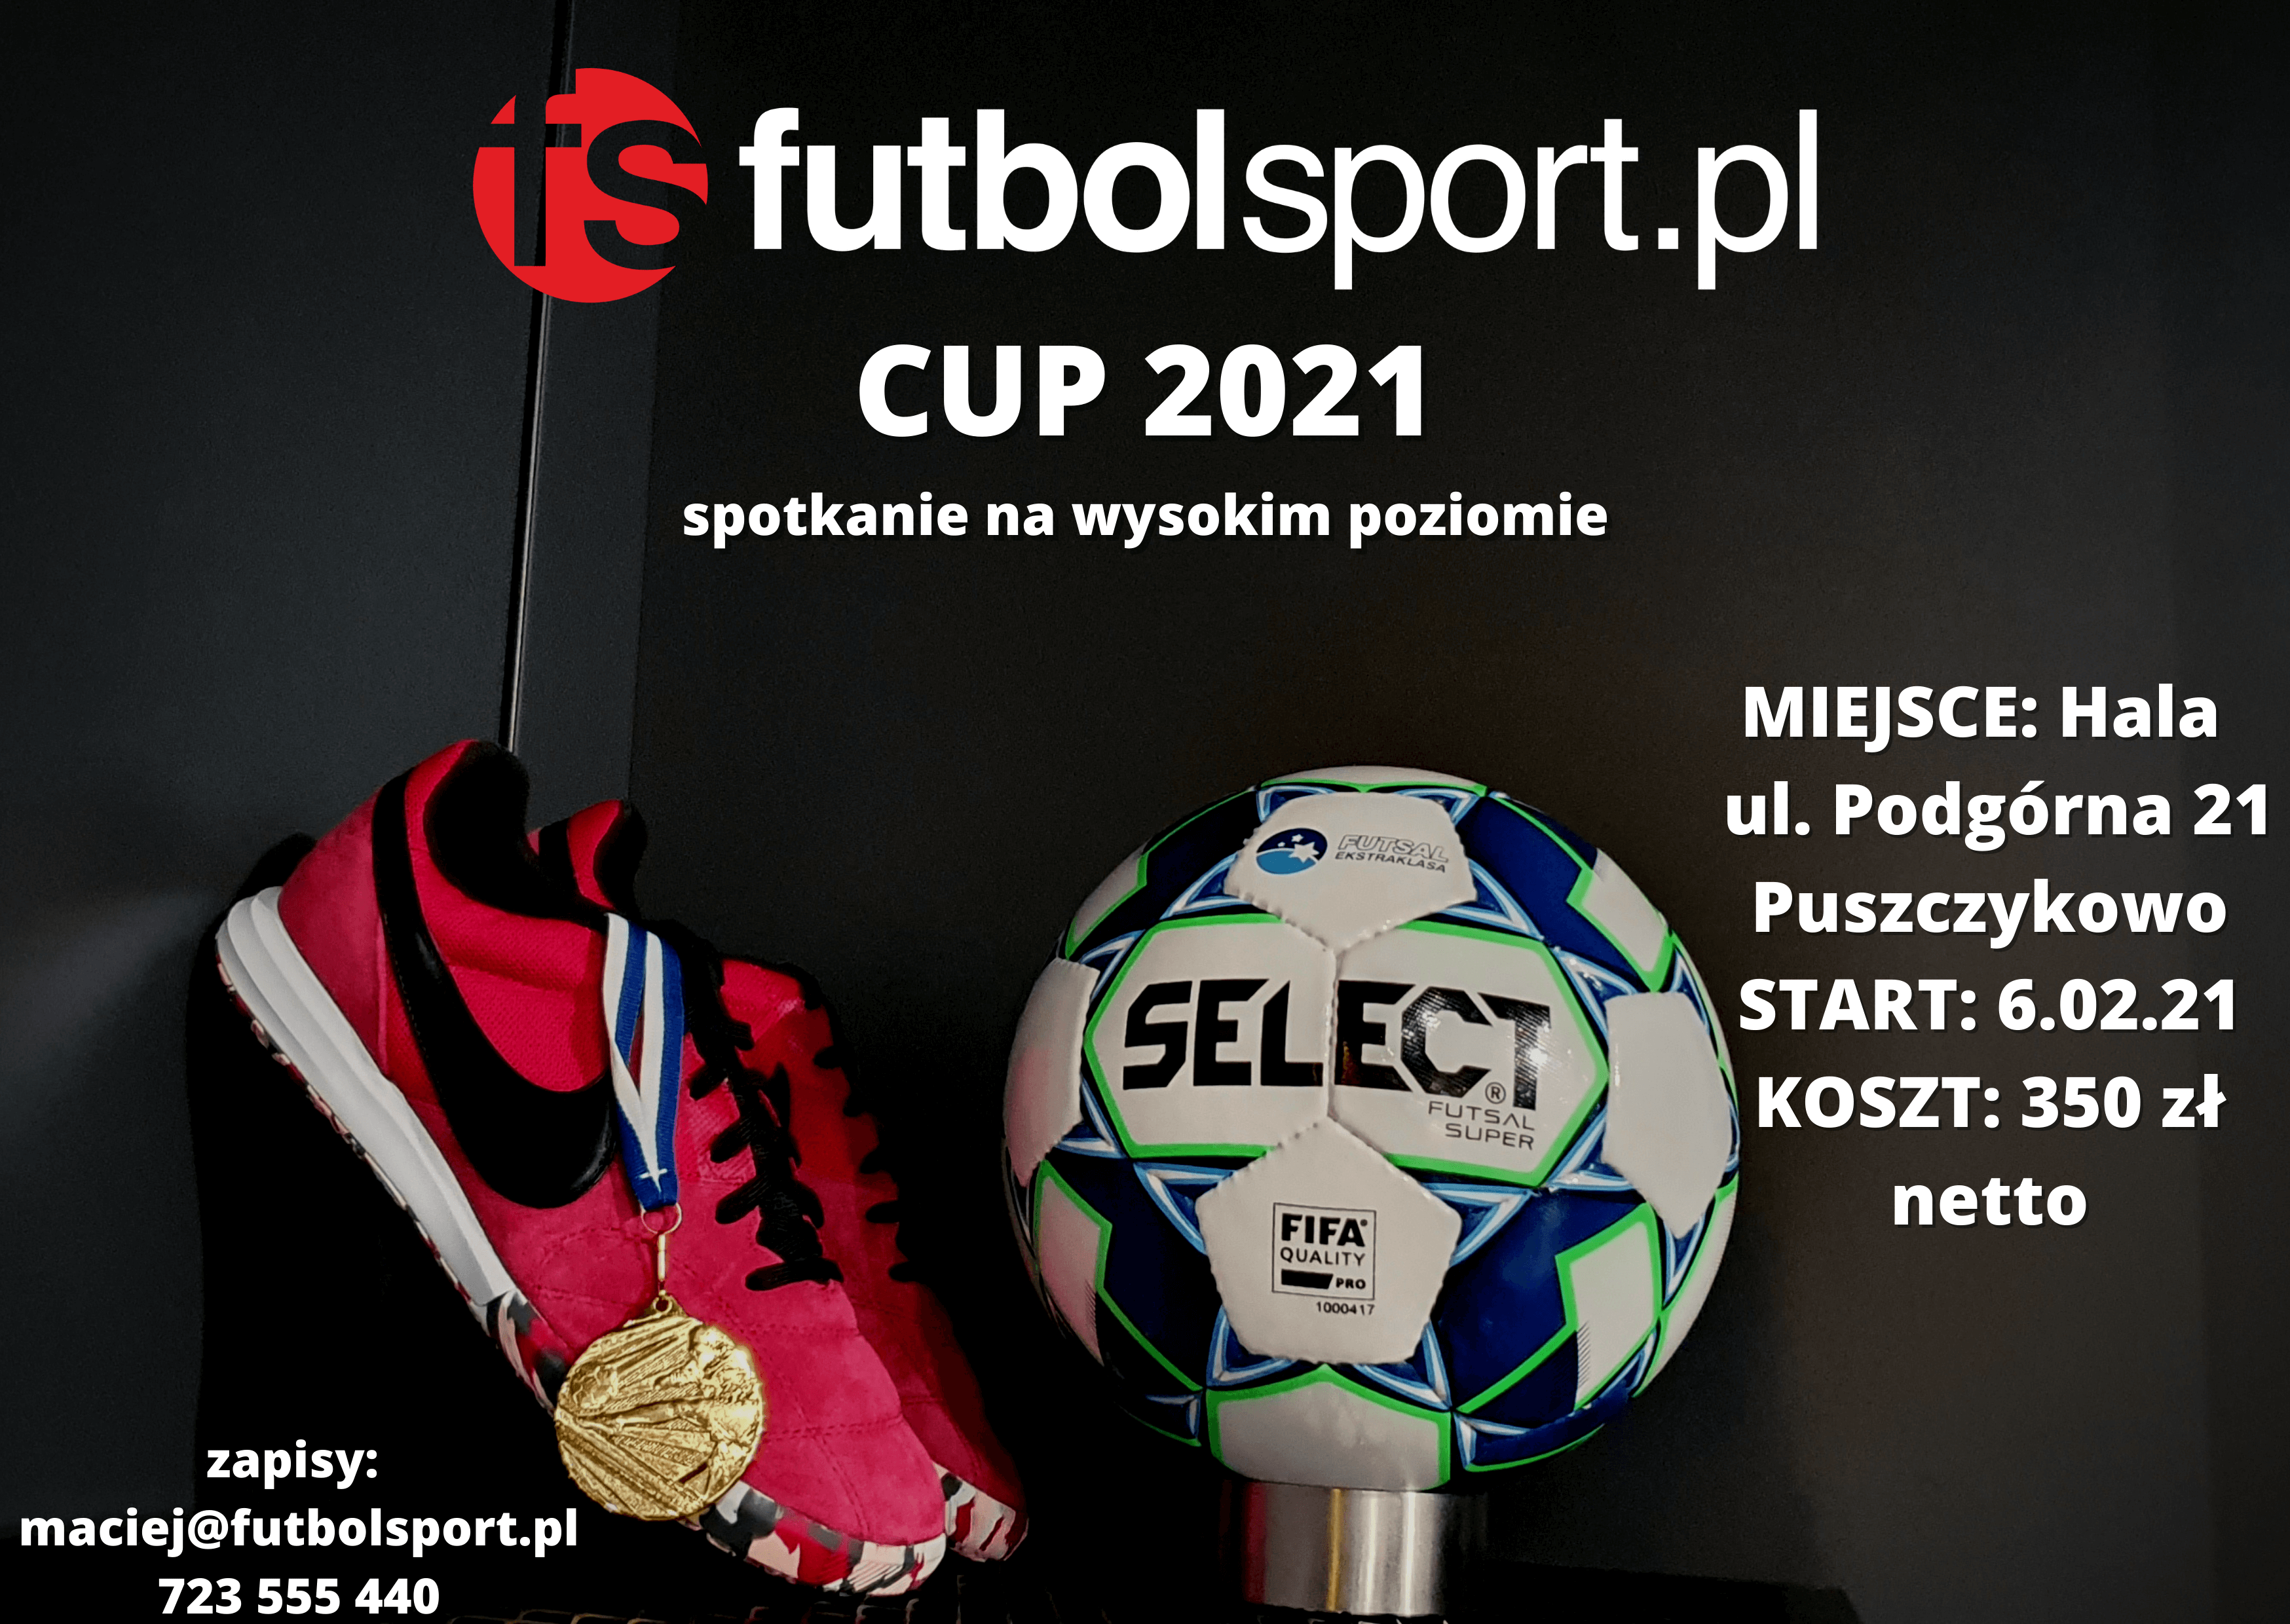 Pozostały trzy miejsca na futbolsport.pl CUP 2021